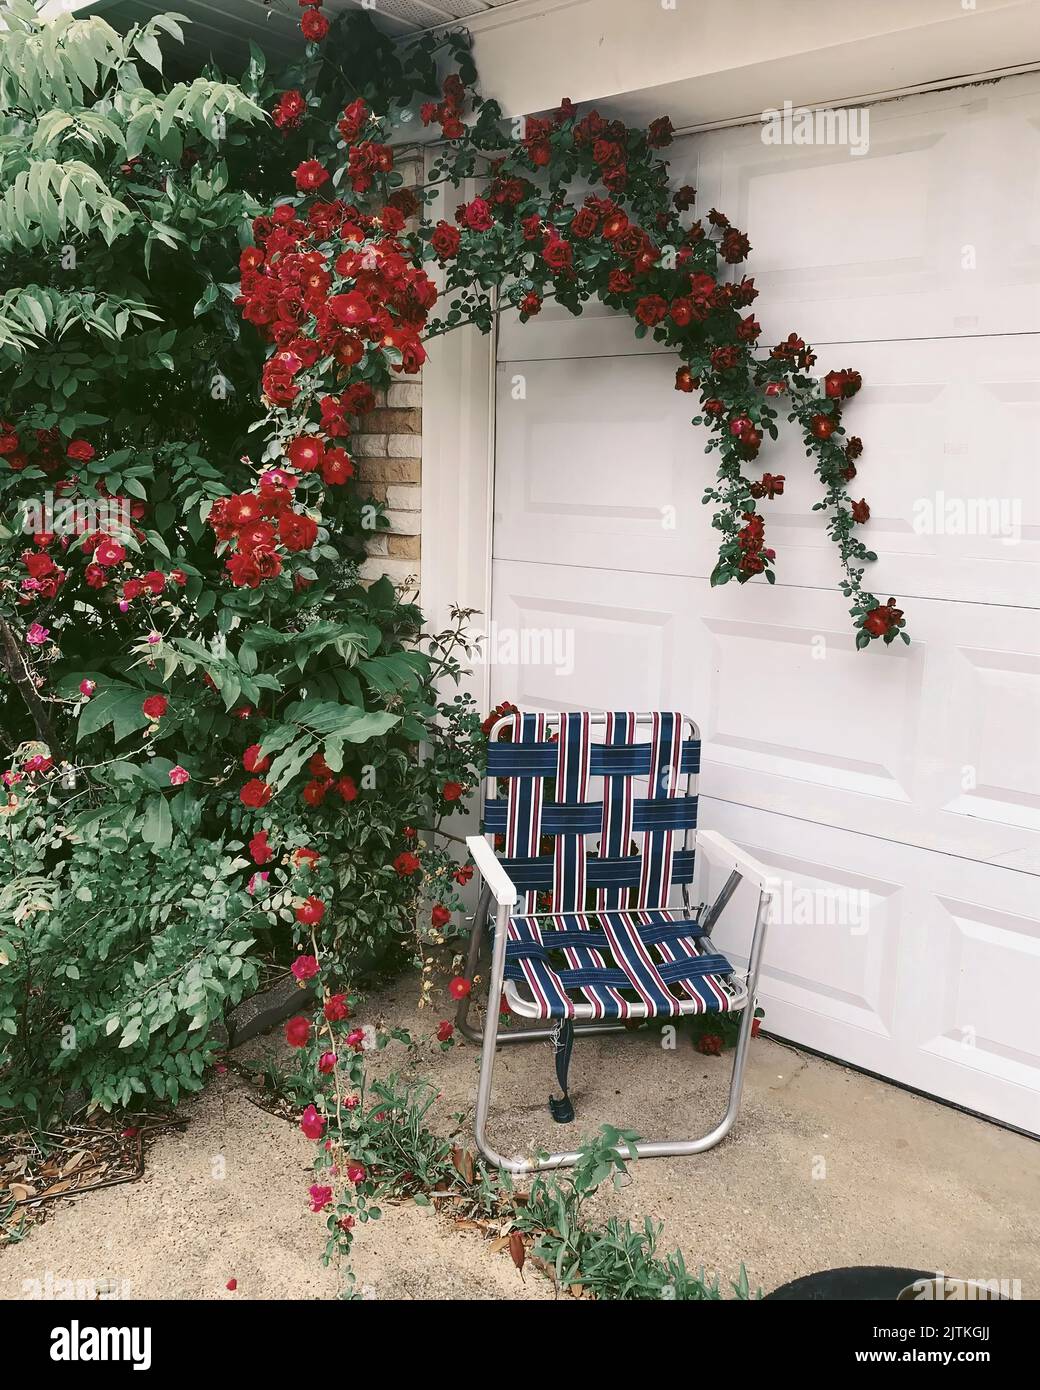 Uno scatto verticale di una sedia da prato davanti ad una porta bianca del garage vicino ad un giardino con le rose rampicanti rosse che appendono sopra. Foto Stock